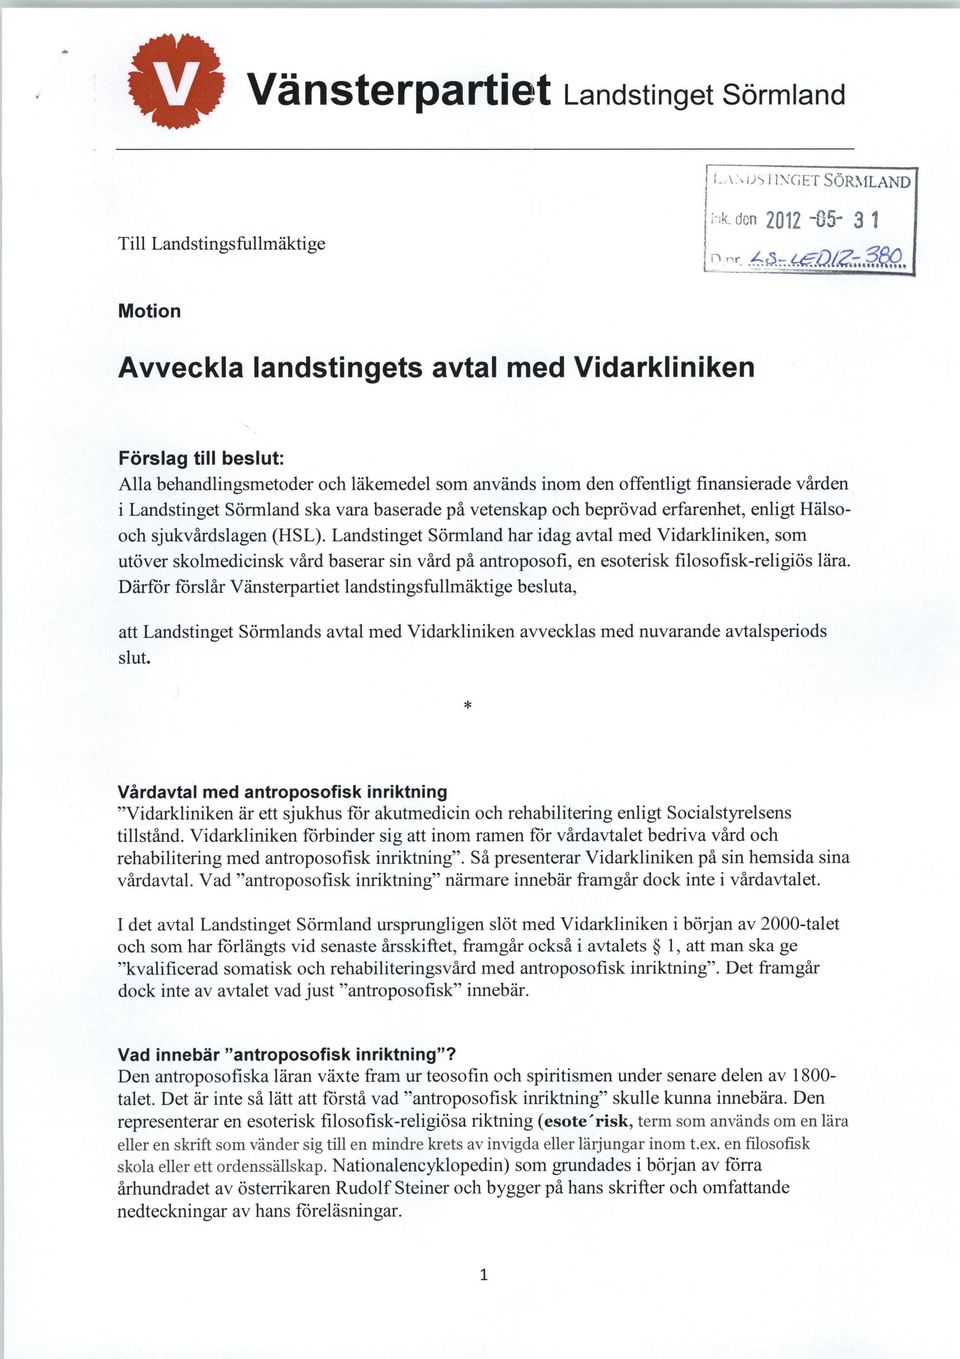 Landstinget Sörmland har idag avtal med Vidarkliniken, som utöver skolmedicinsk vård baserar sin vård på antroposofi, en esoterisk filosofisk-religiös lära.